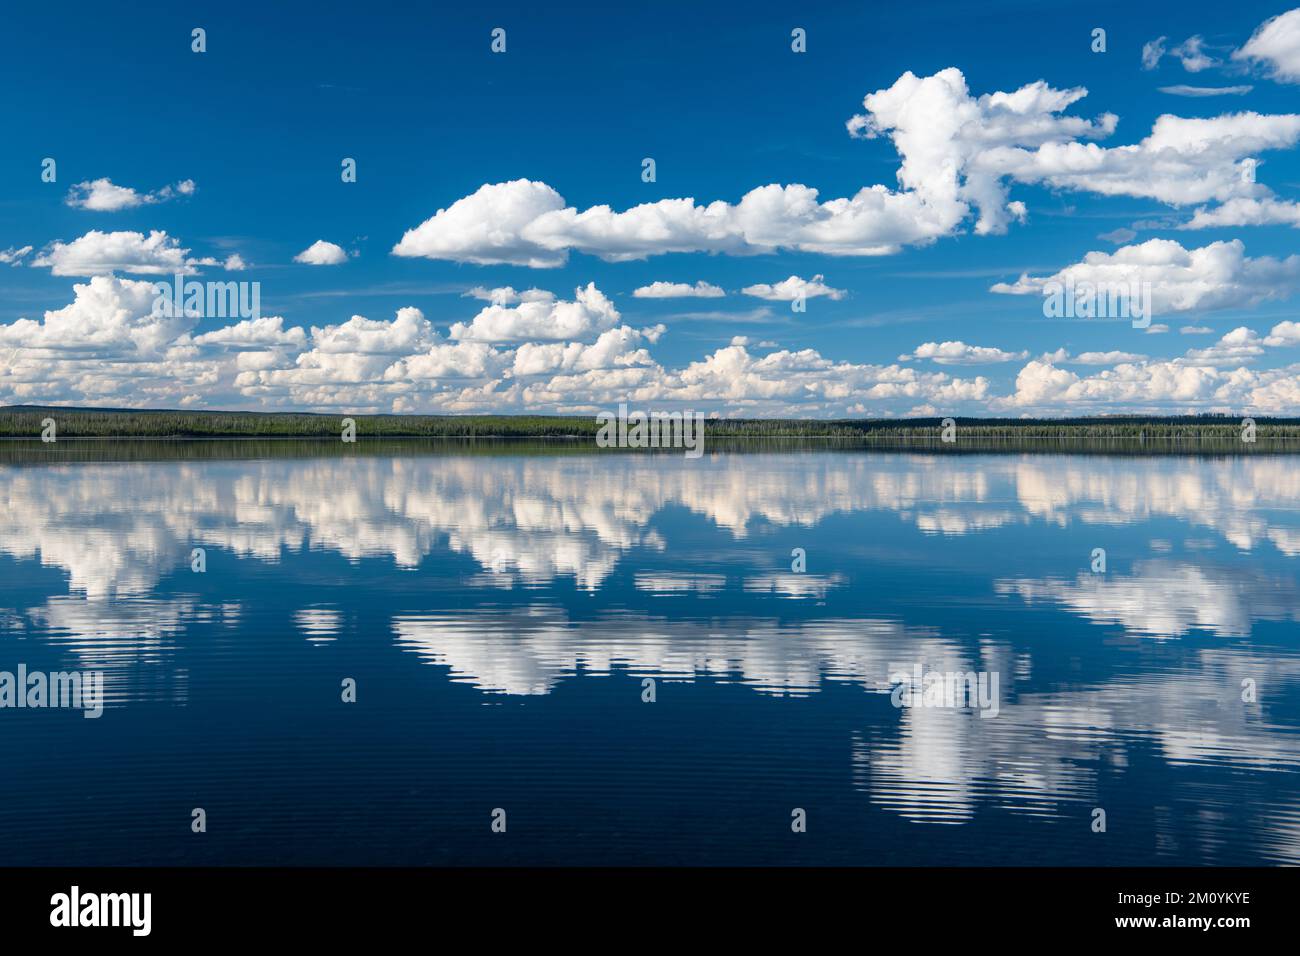 Friedliche, idyllische Szene mit blauem Himmel und flauschigen weißen Wolken, die sich im Wasser eines perfekt ruhigen Sees spiegeln Stockfoto